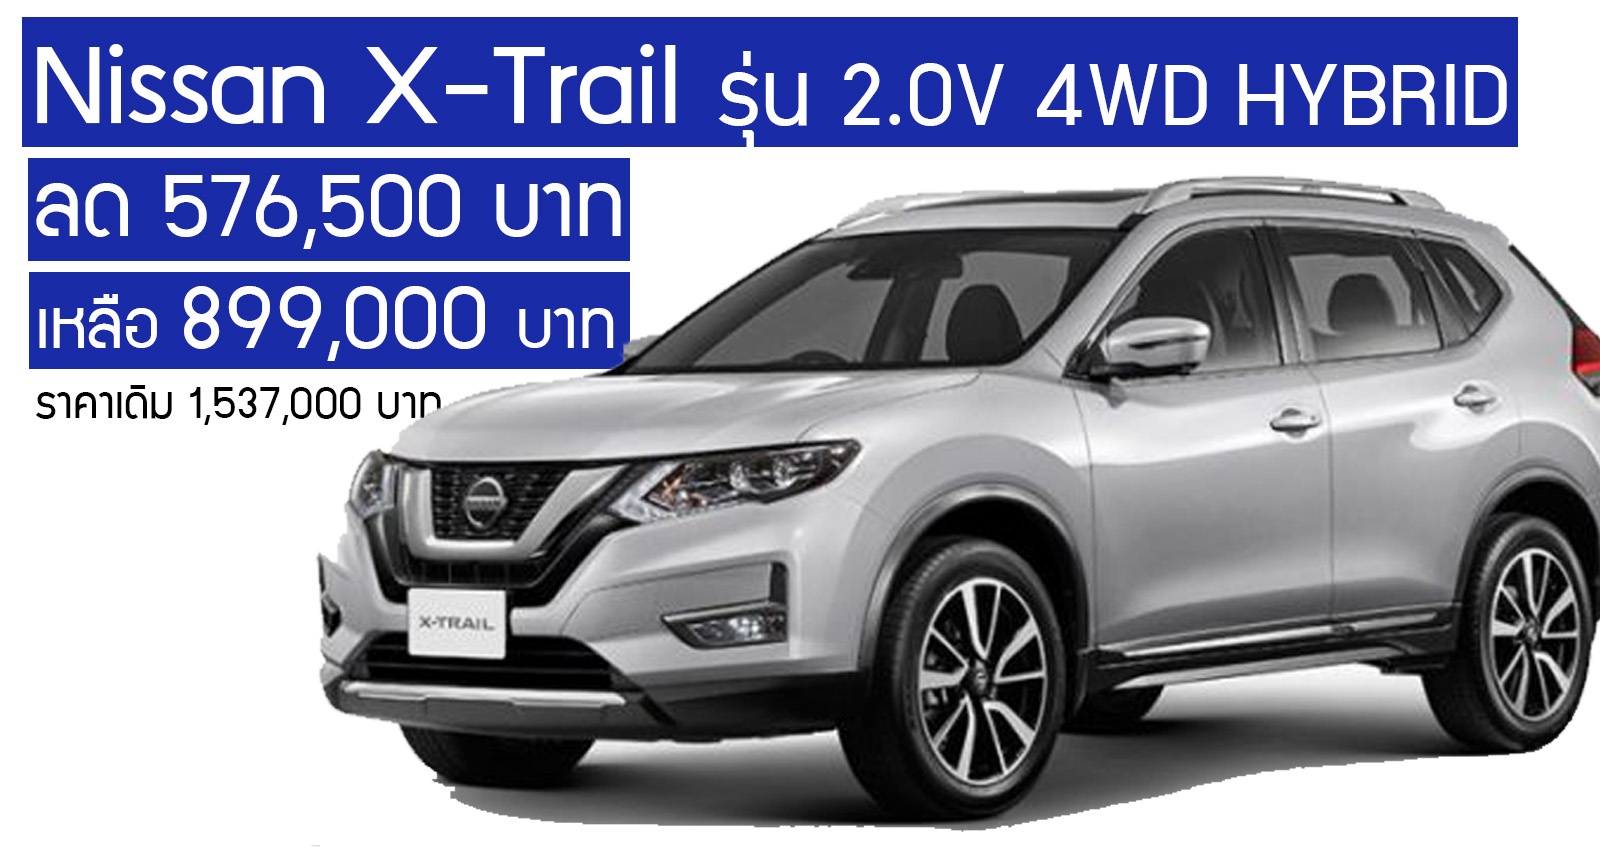 ลด 576,500 บาท ก่อนปรับเจน! Nissan X-Trail รุ่น 2.0V 4WD HYBRID ราคาเดิม 1,537,000 บาท เหลือ 899,000 บาท